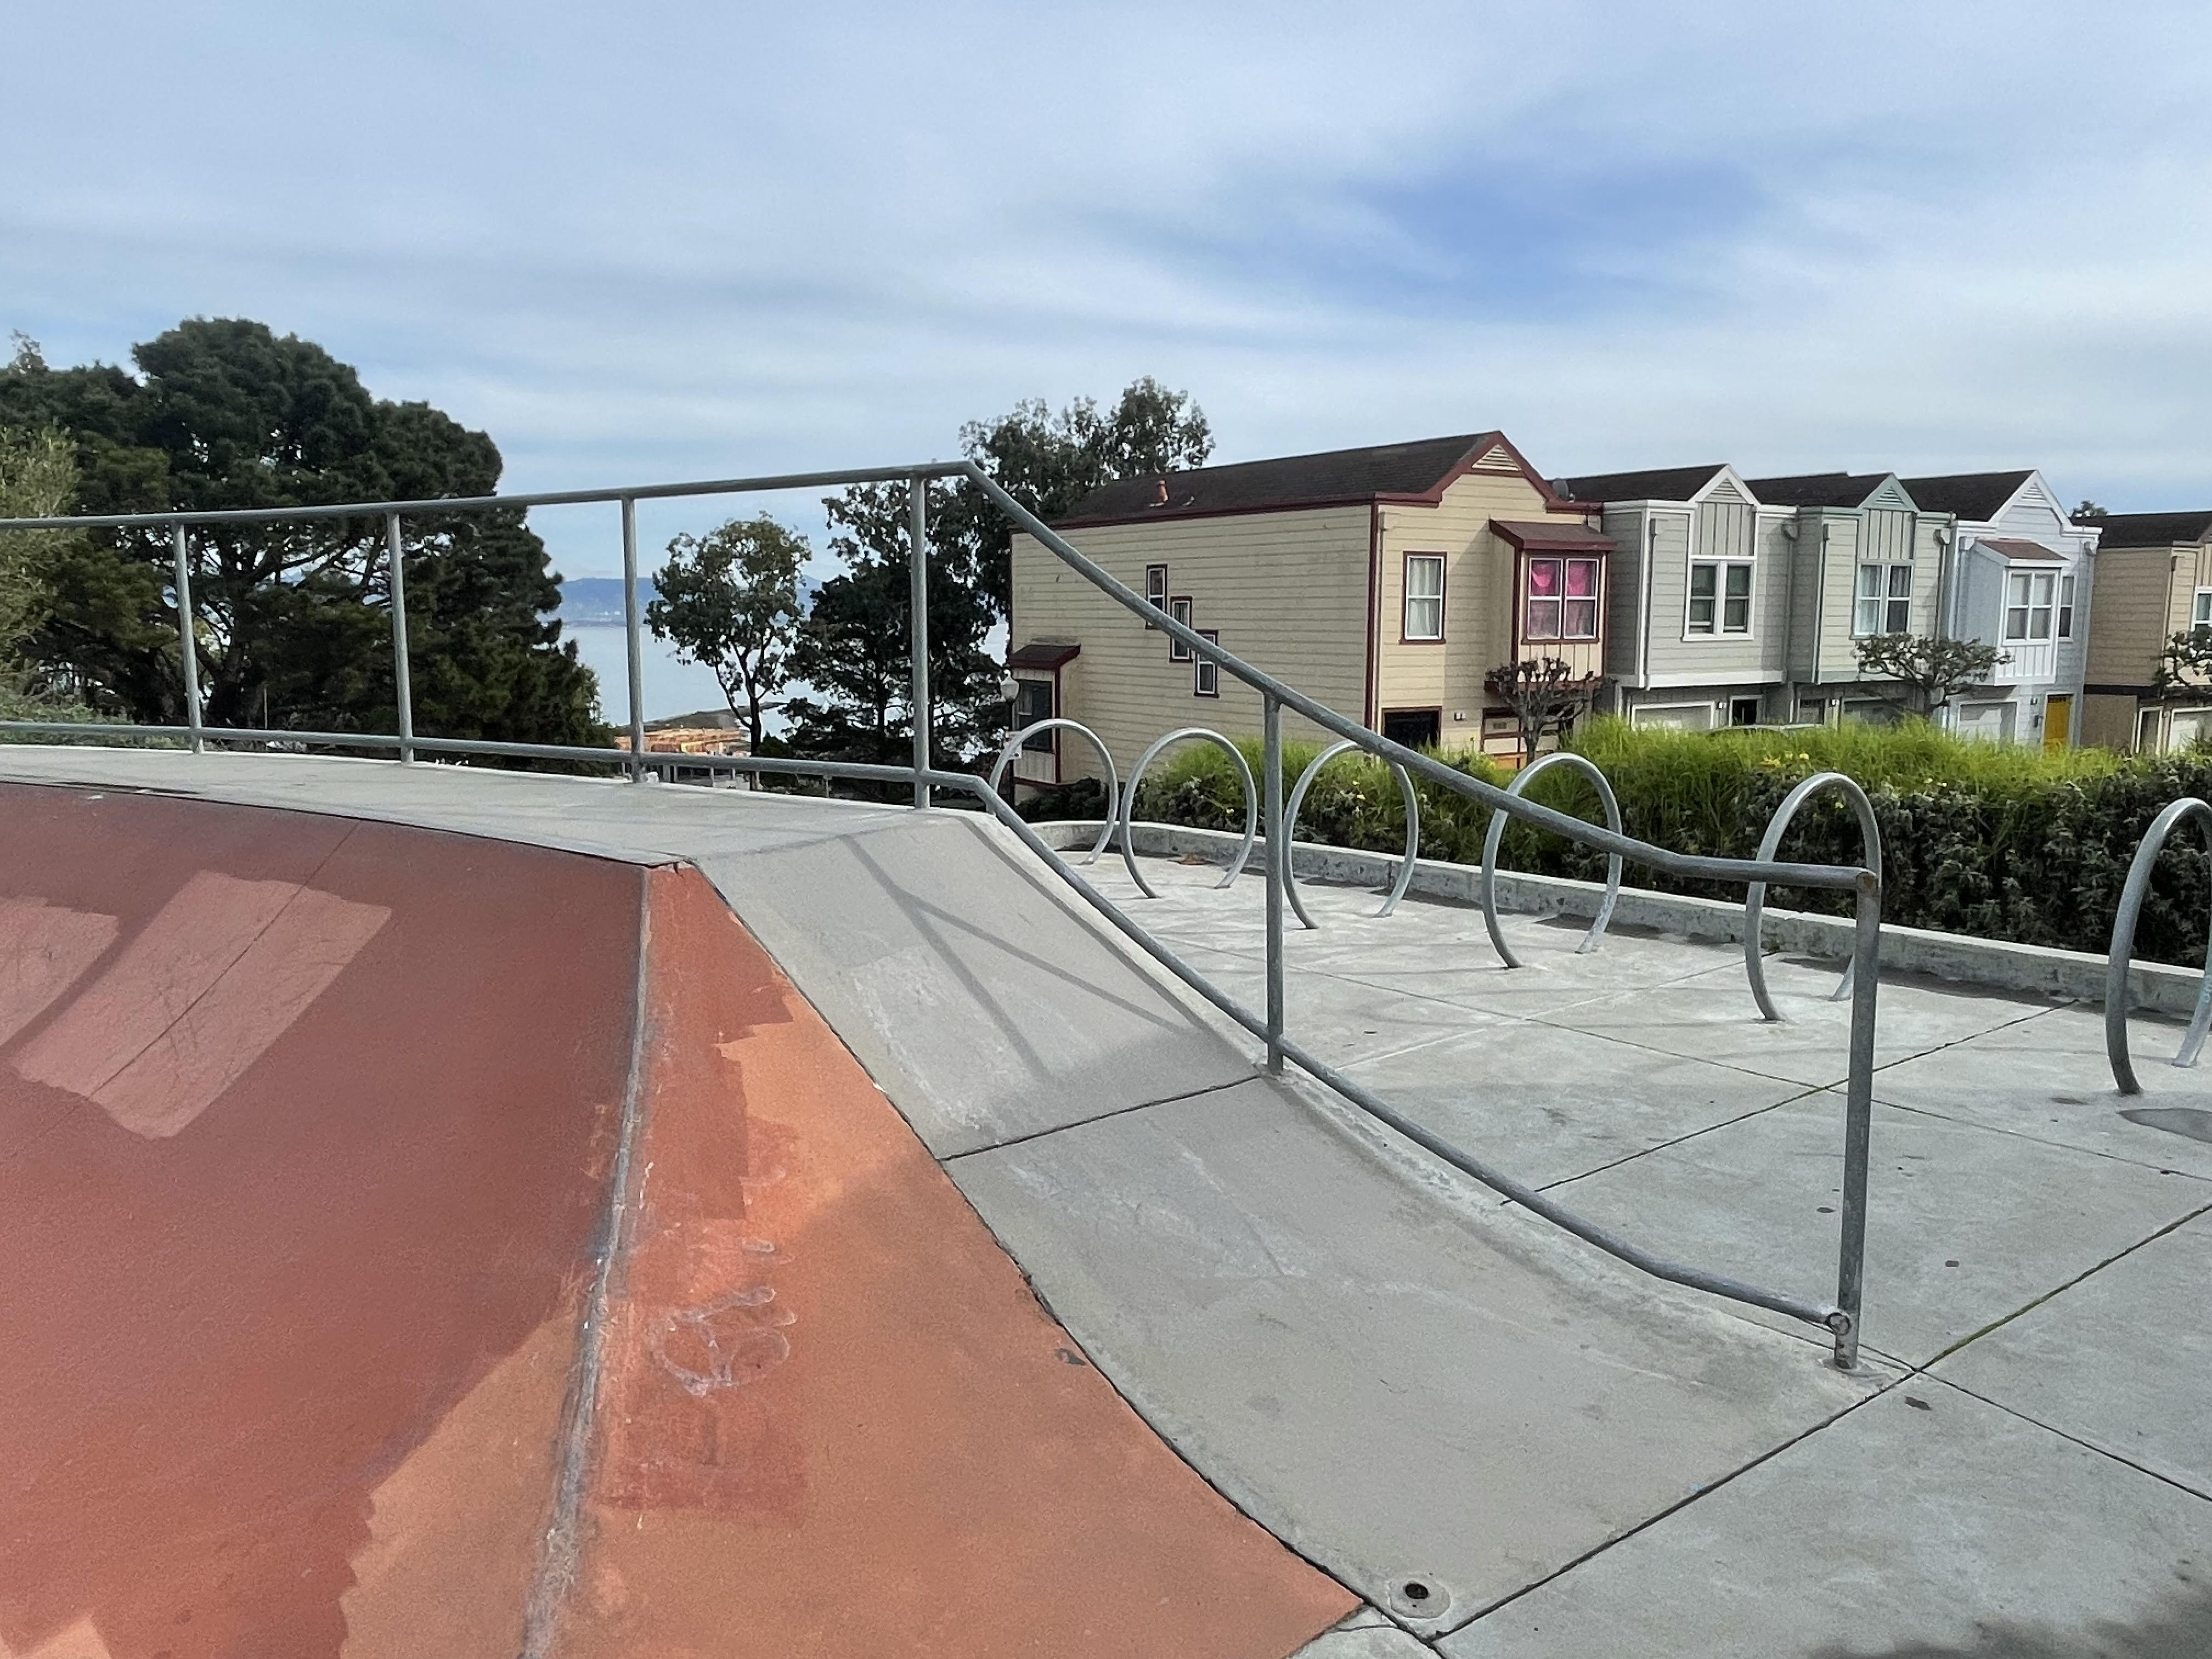 Hilltop skatepark